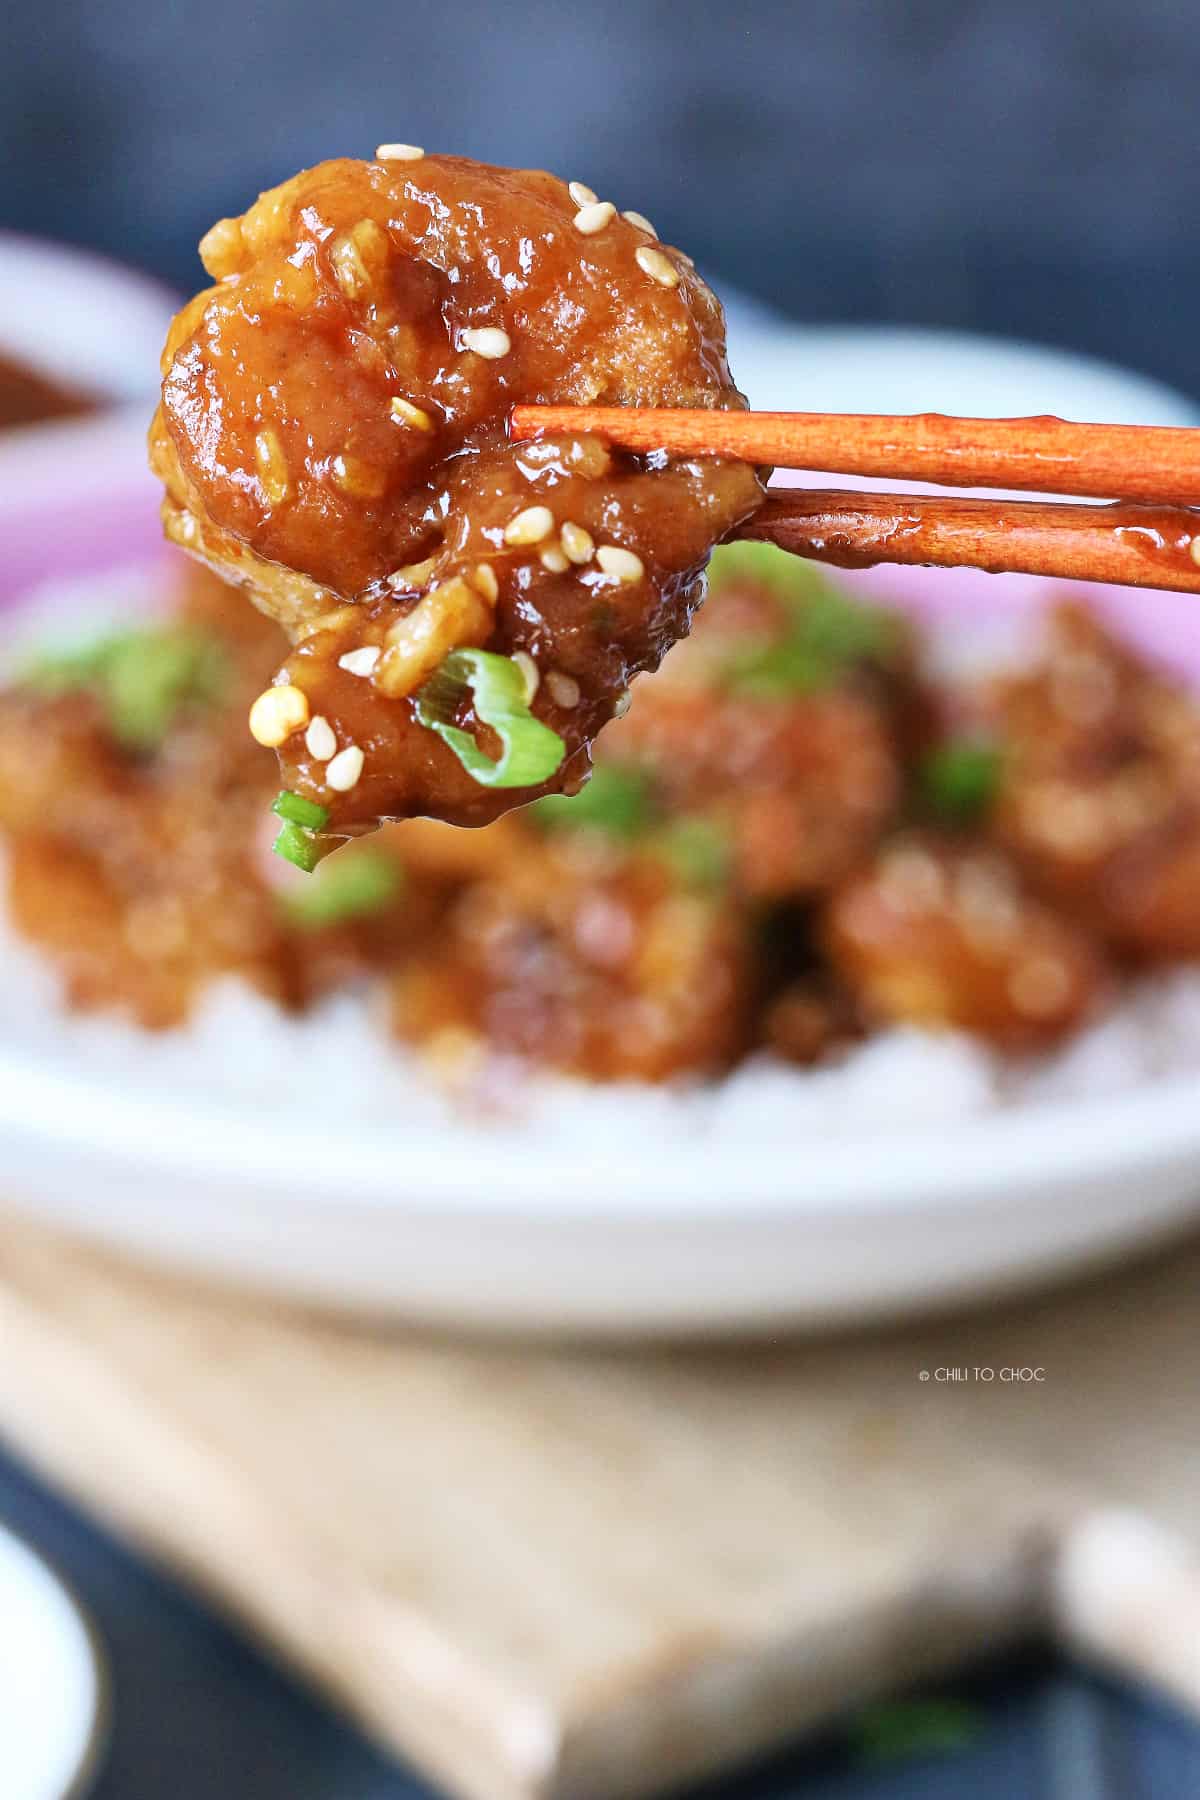 A pair of chopsticks holding glazed shrimp with sesame seeds